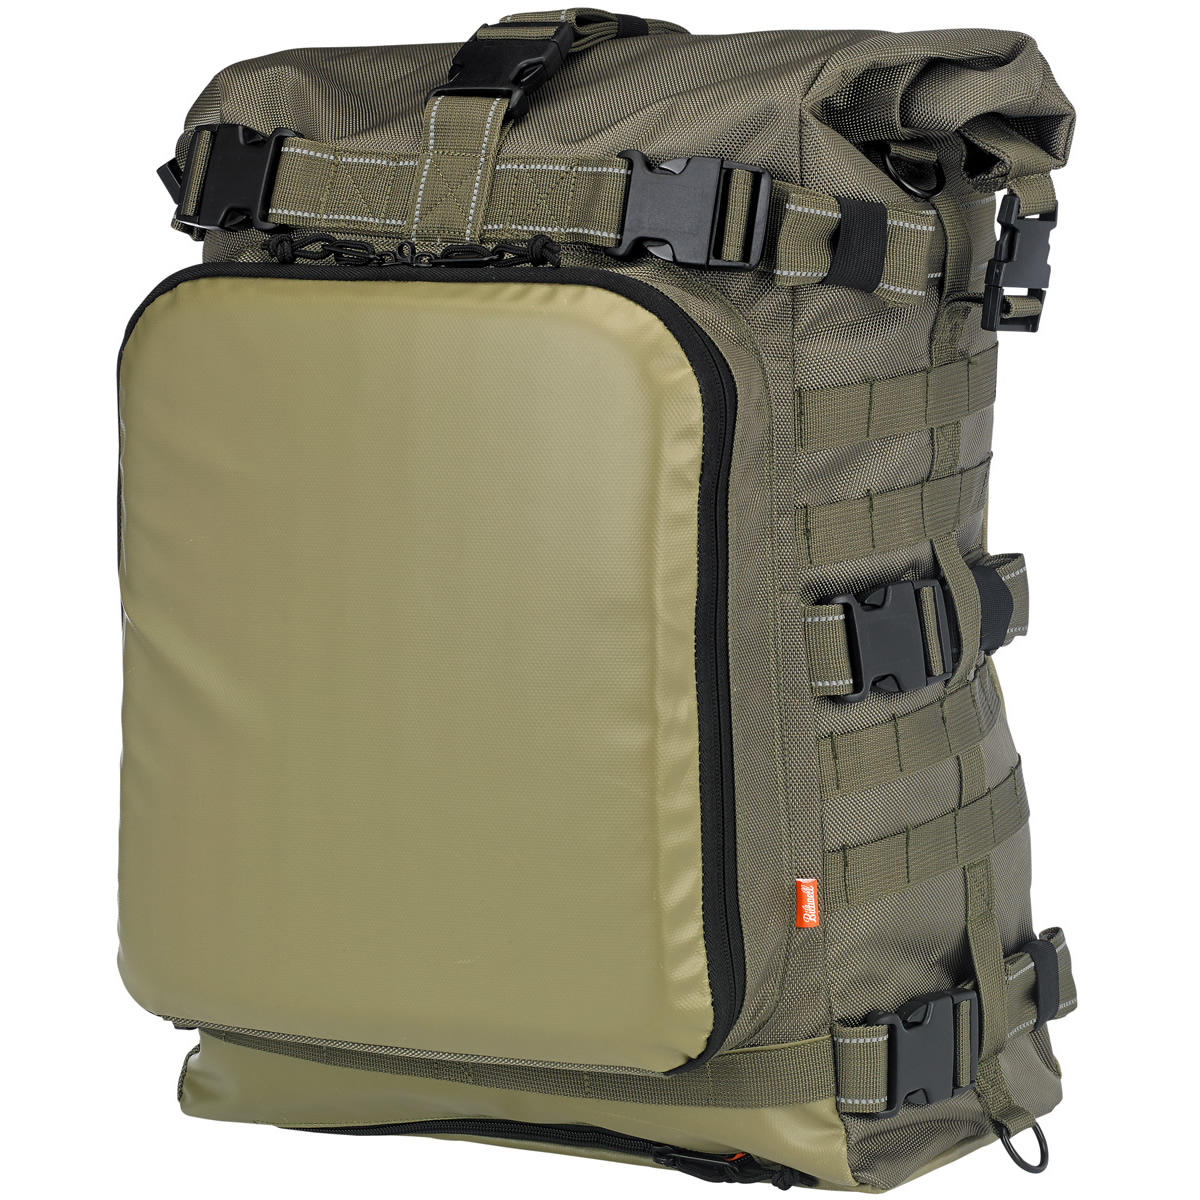 CLOSEOUT EXFIL-80 Bag Gen 1 - OD Green